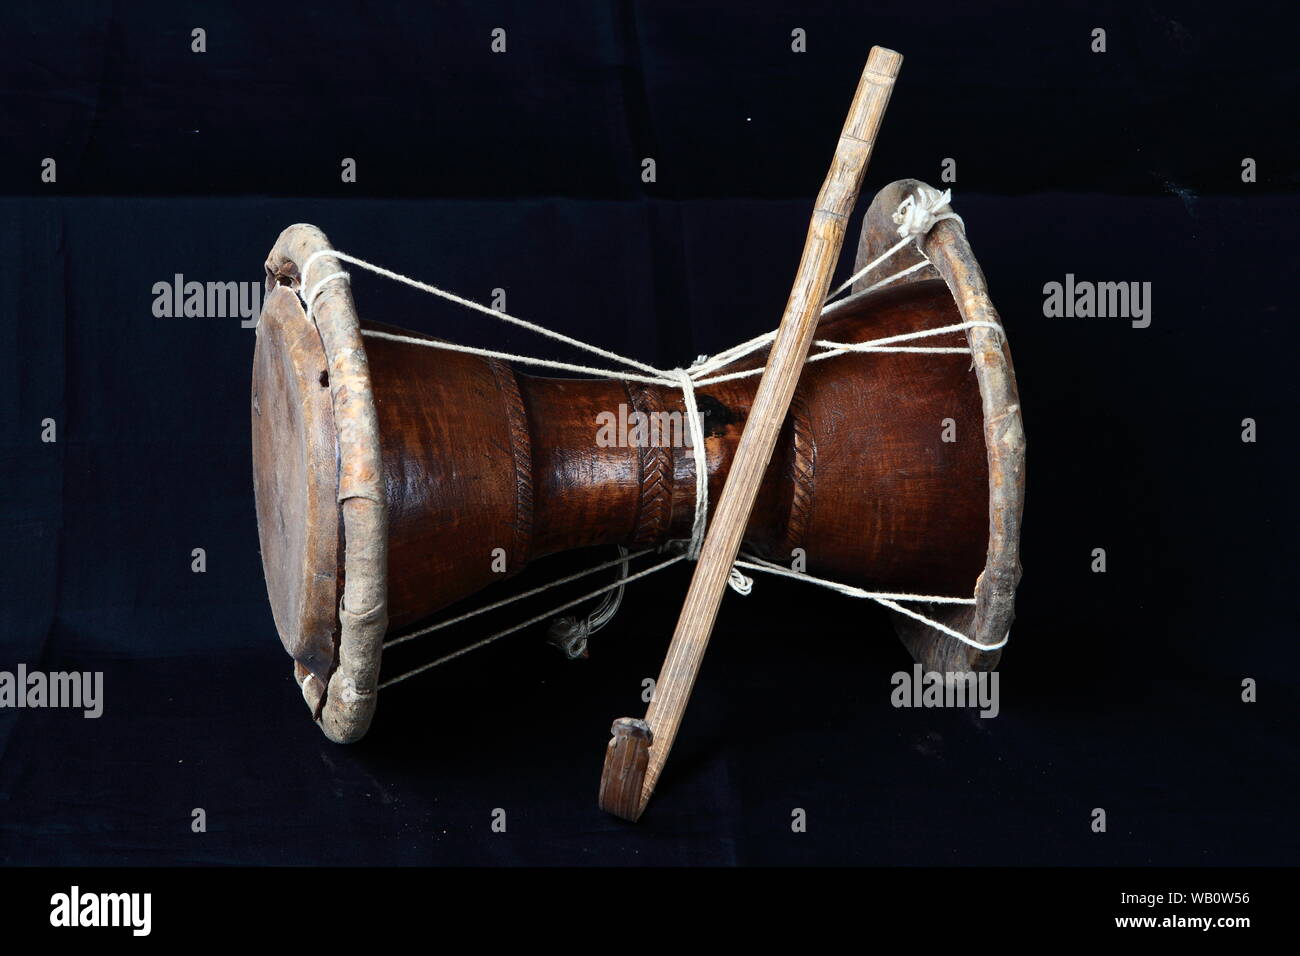 THUDI - Instrument de musique traditionnel de la tribu Paniya, Kerala, Inde Banque D'Images